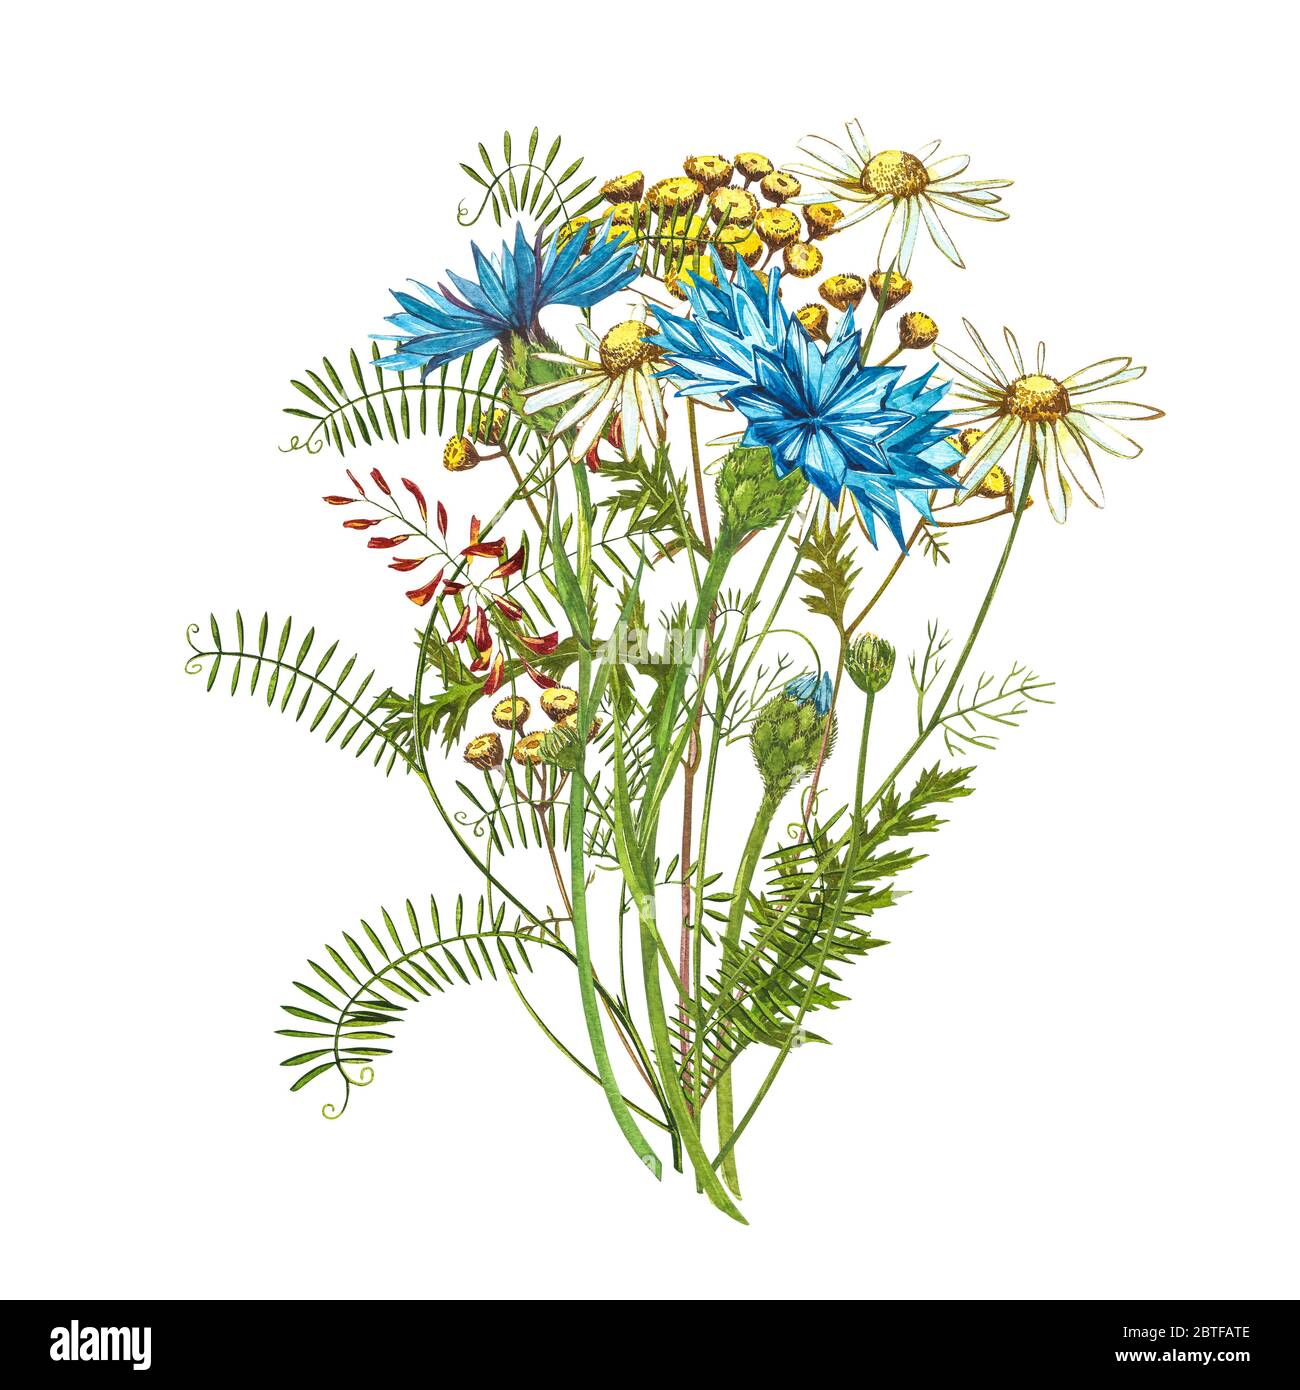 Blauer Kornblume Kraut oder Junggesellenbouquet mit Pansy Blumen isoliert auf weißem Hintergrund. Zeichnungssatz Kornblumen, florale Elemente, w Stockfoto